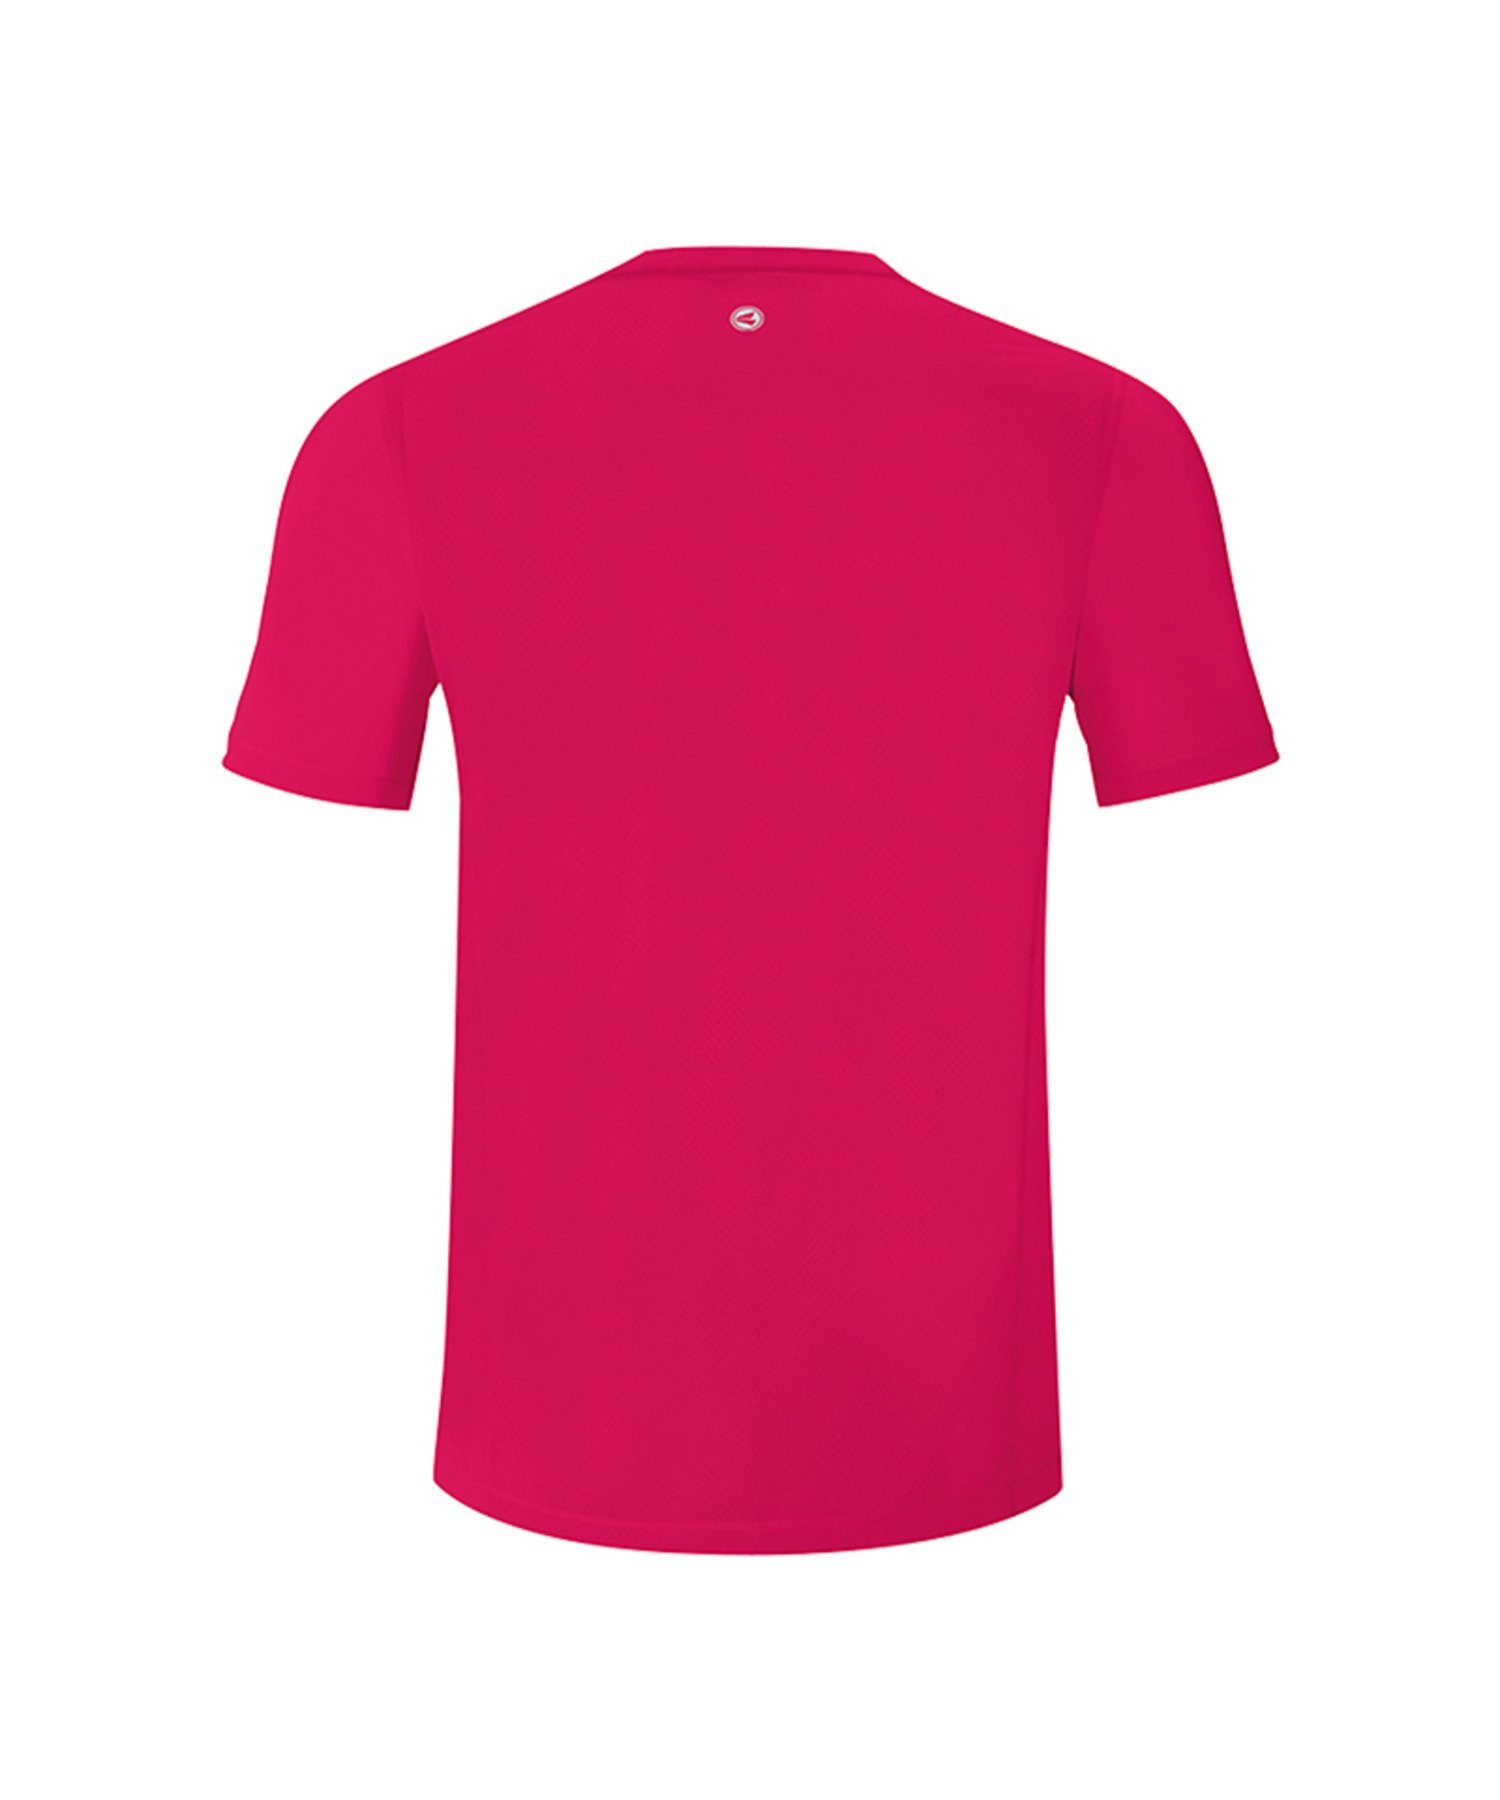 Jako Kids Run Running 2.0 Pink default T-Shirt Laufshirt